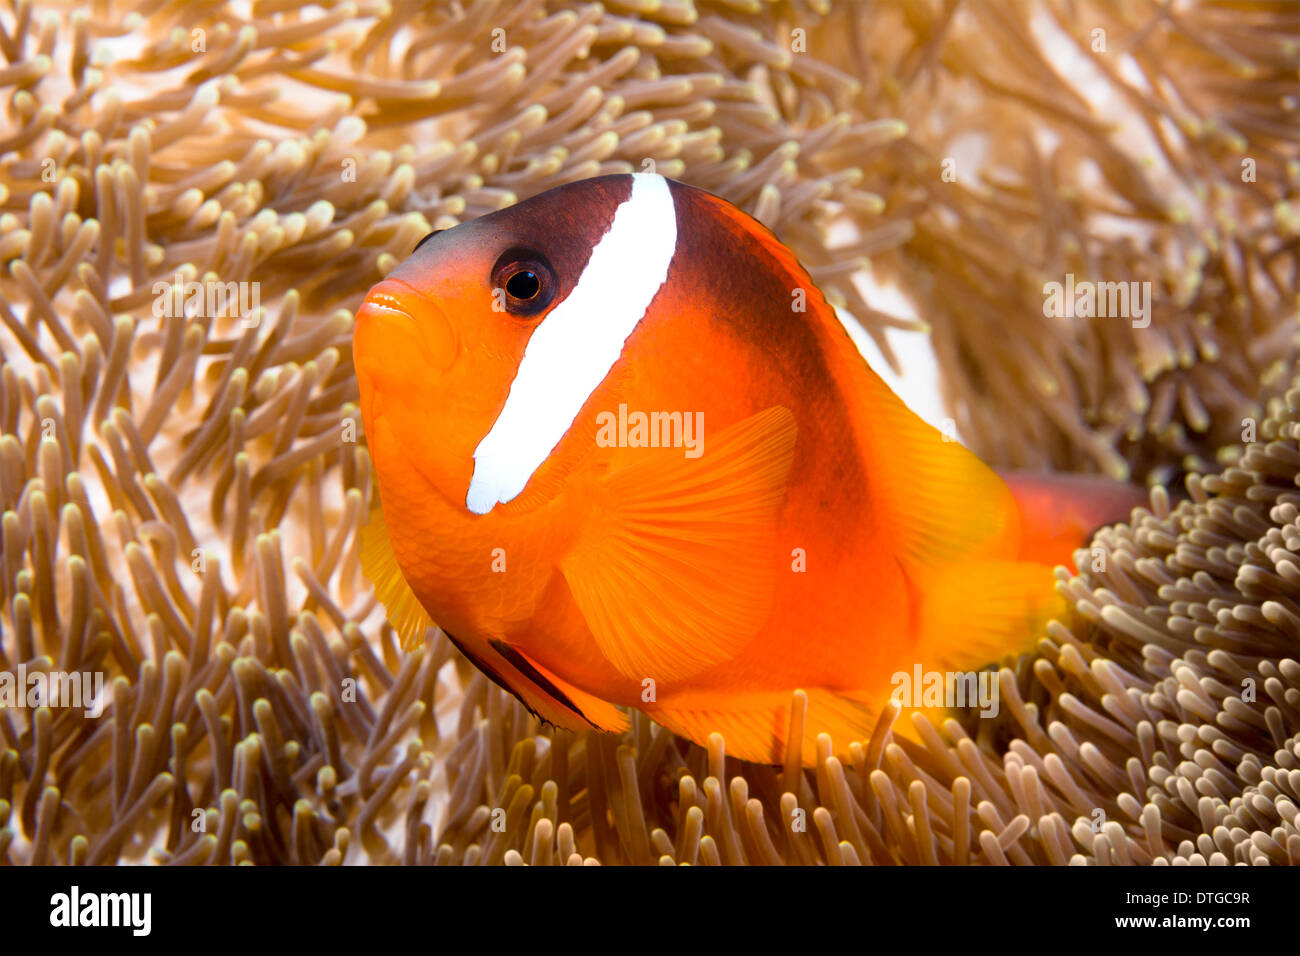 Ein helles orange Clownfisch schwimmt herum die Tentakel eine riesige Anemone,, die es, als seine Heimat verwendet. Stockfoto